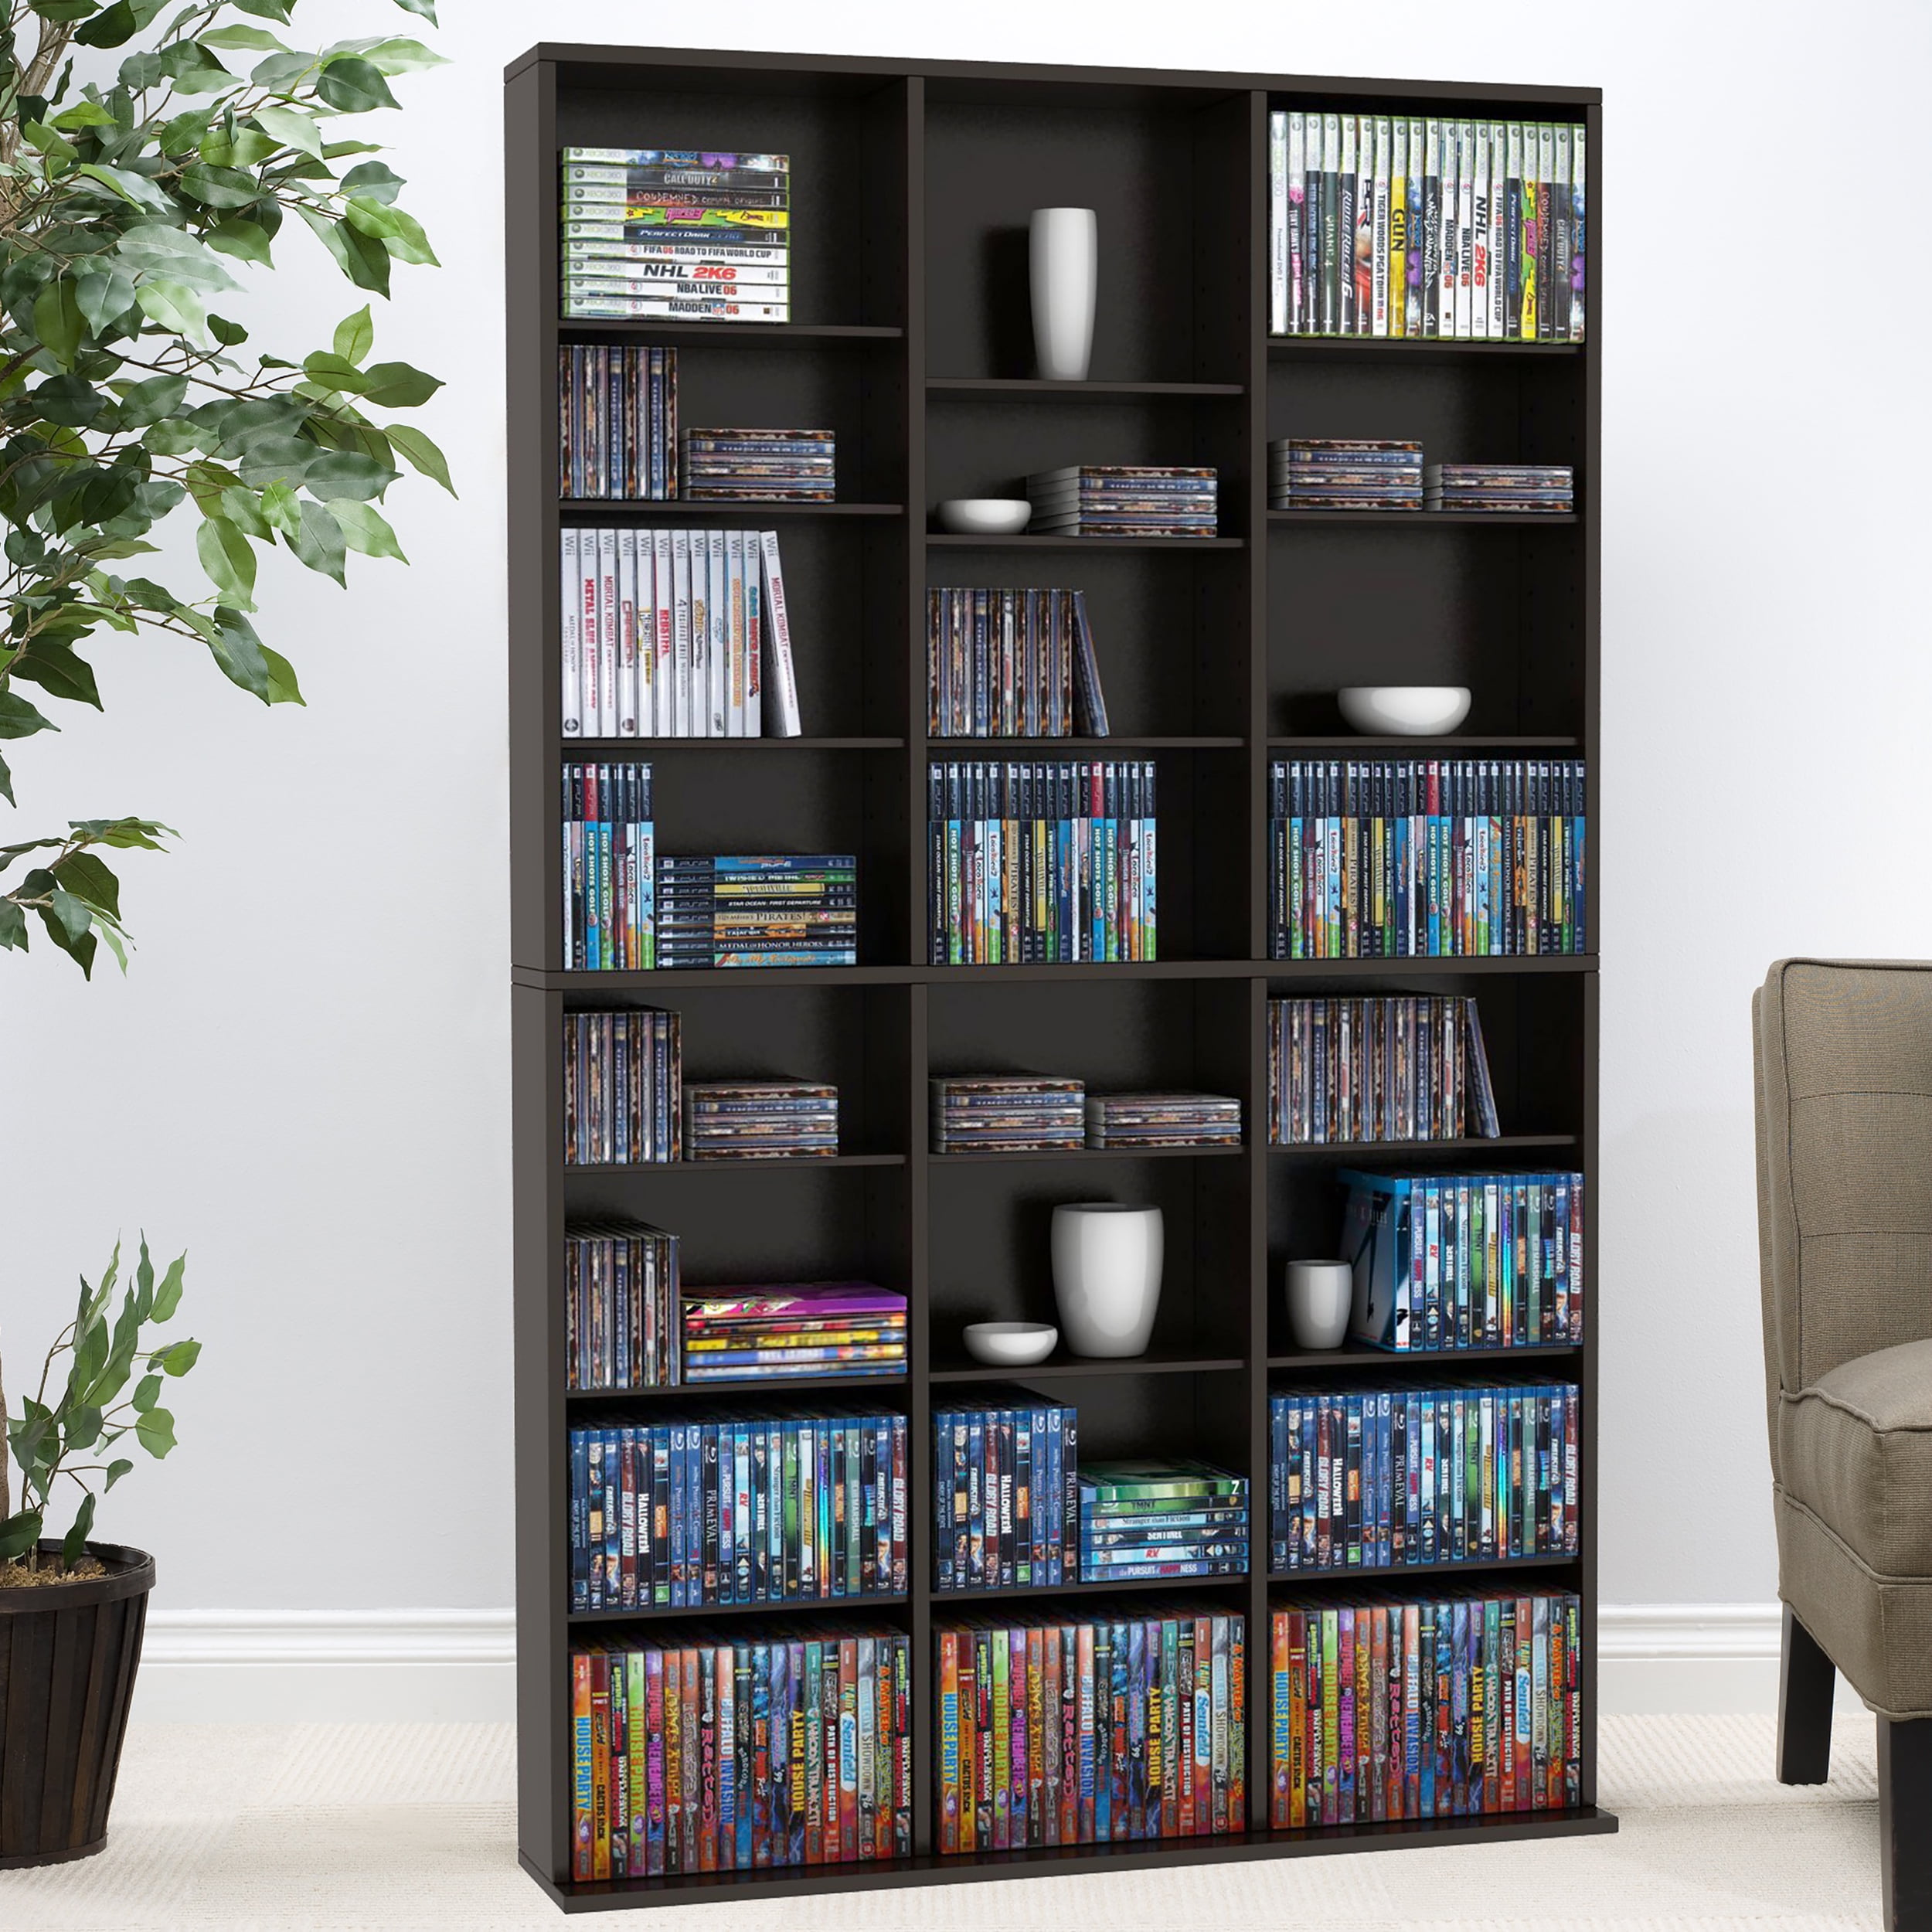 Atlantic Maple Media Storage Wood Adjustable Shelves Home Furniture Organizer for sale online 